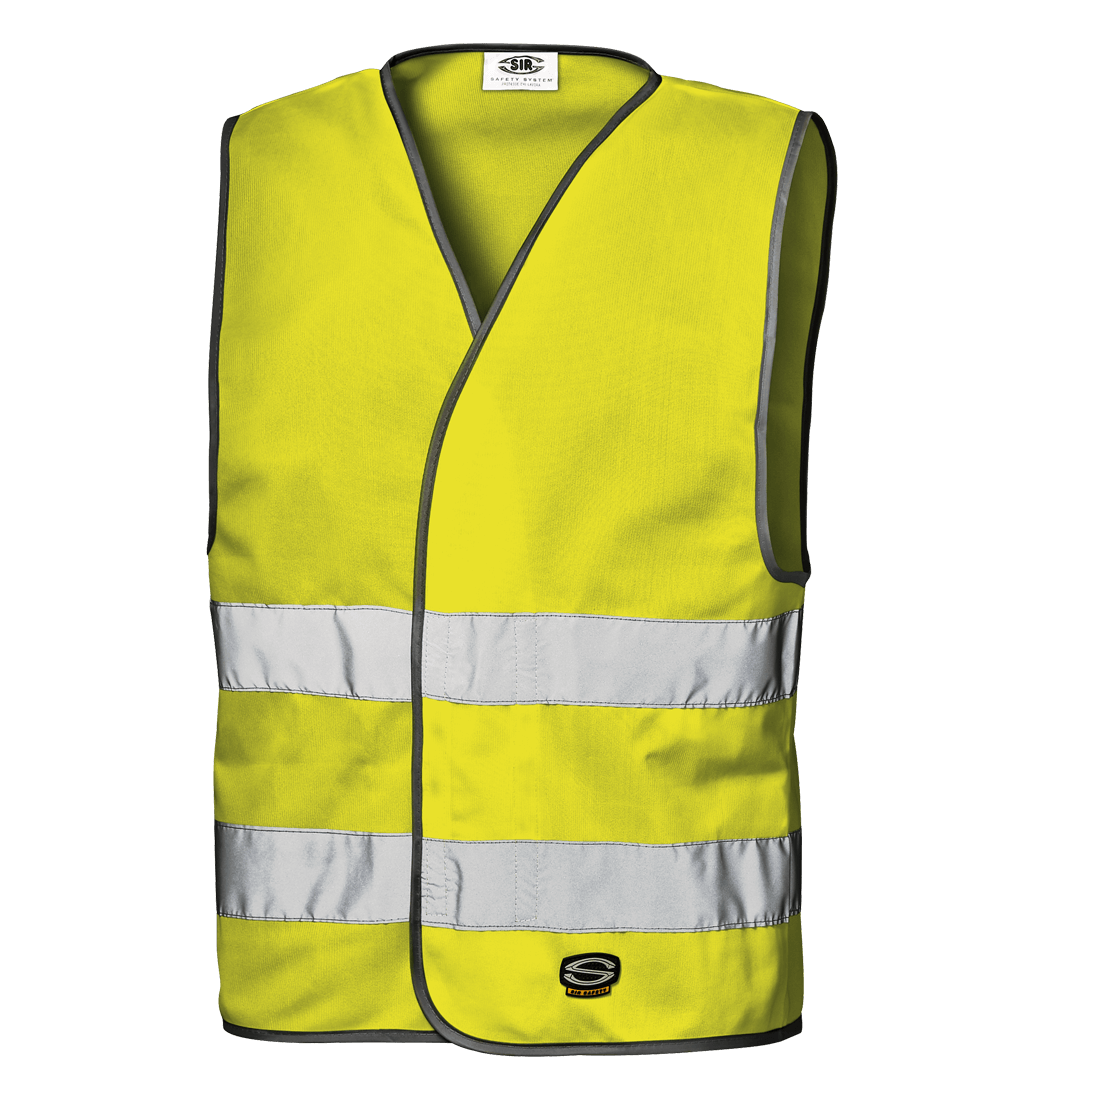 Men's FR Hi-Visibility Safety Vest | Bulwark® FR